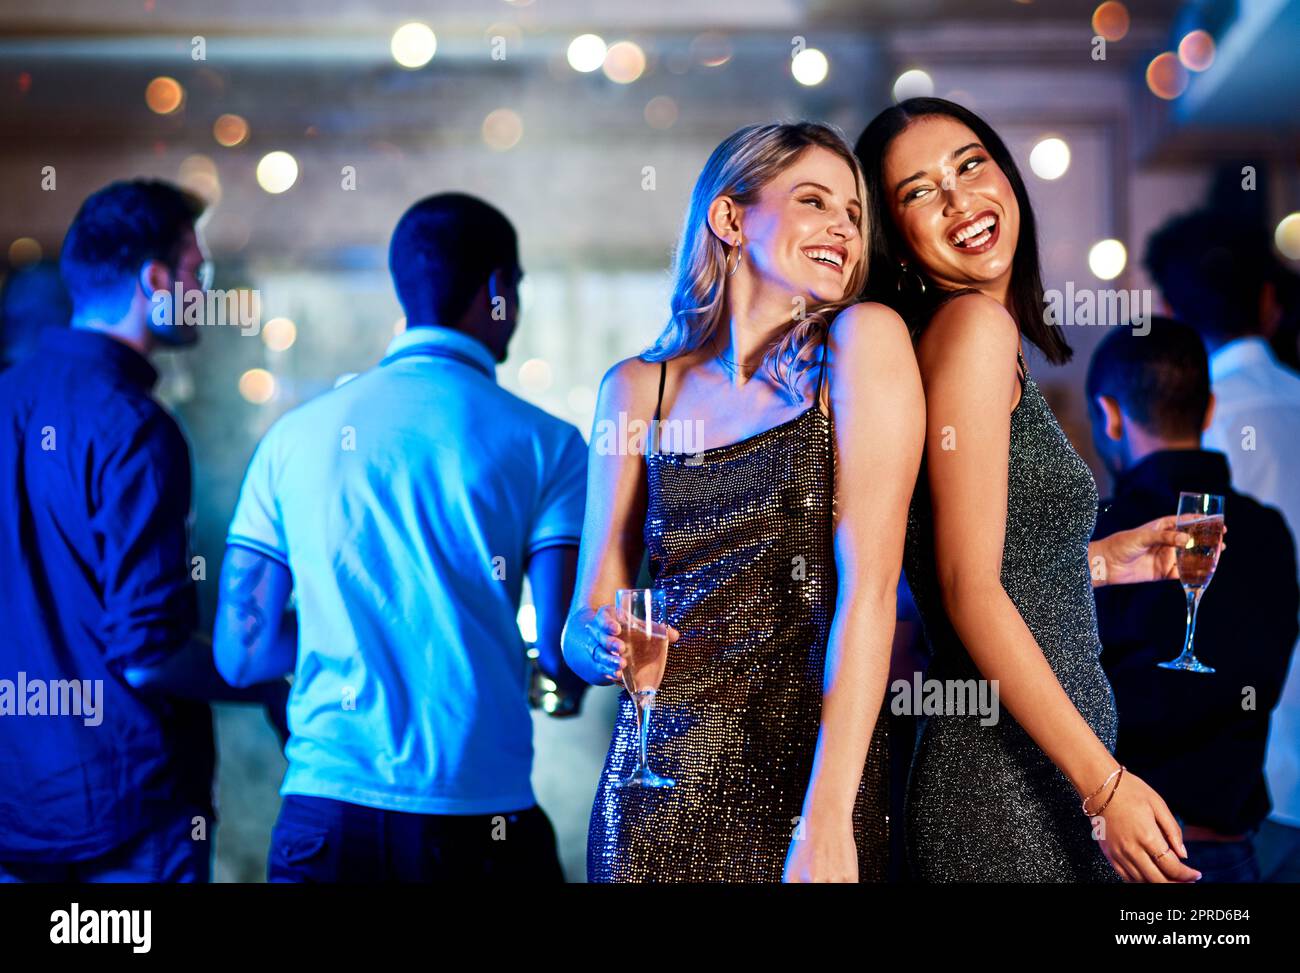 Wir sind in Flammen. Zwei fröhliche junge Frauen trinken, während sie auf der Tanzfläche eines Clubs in der Nacht tanzen. Stockfoto